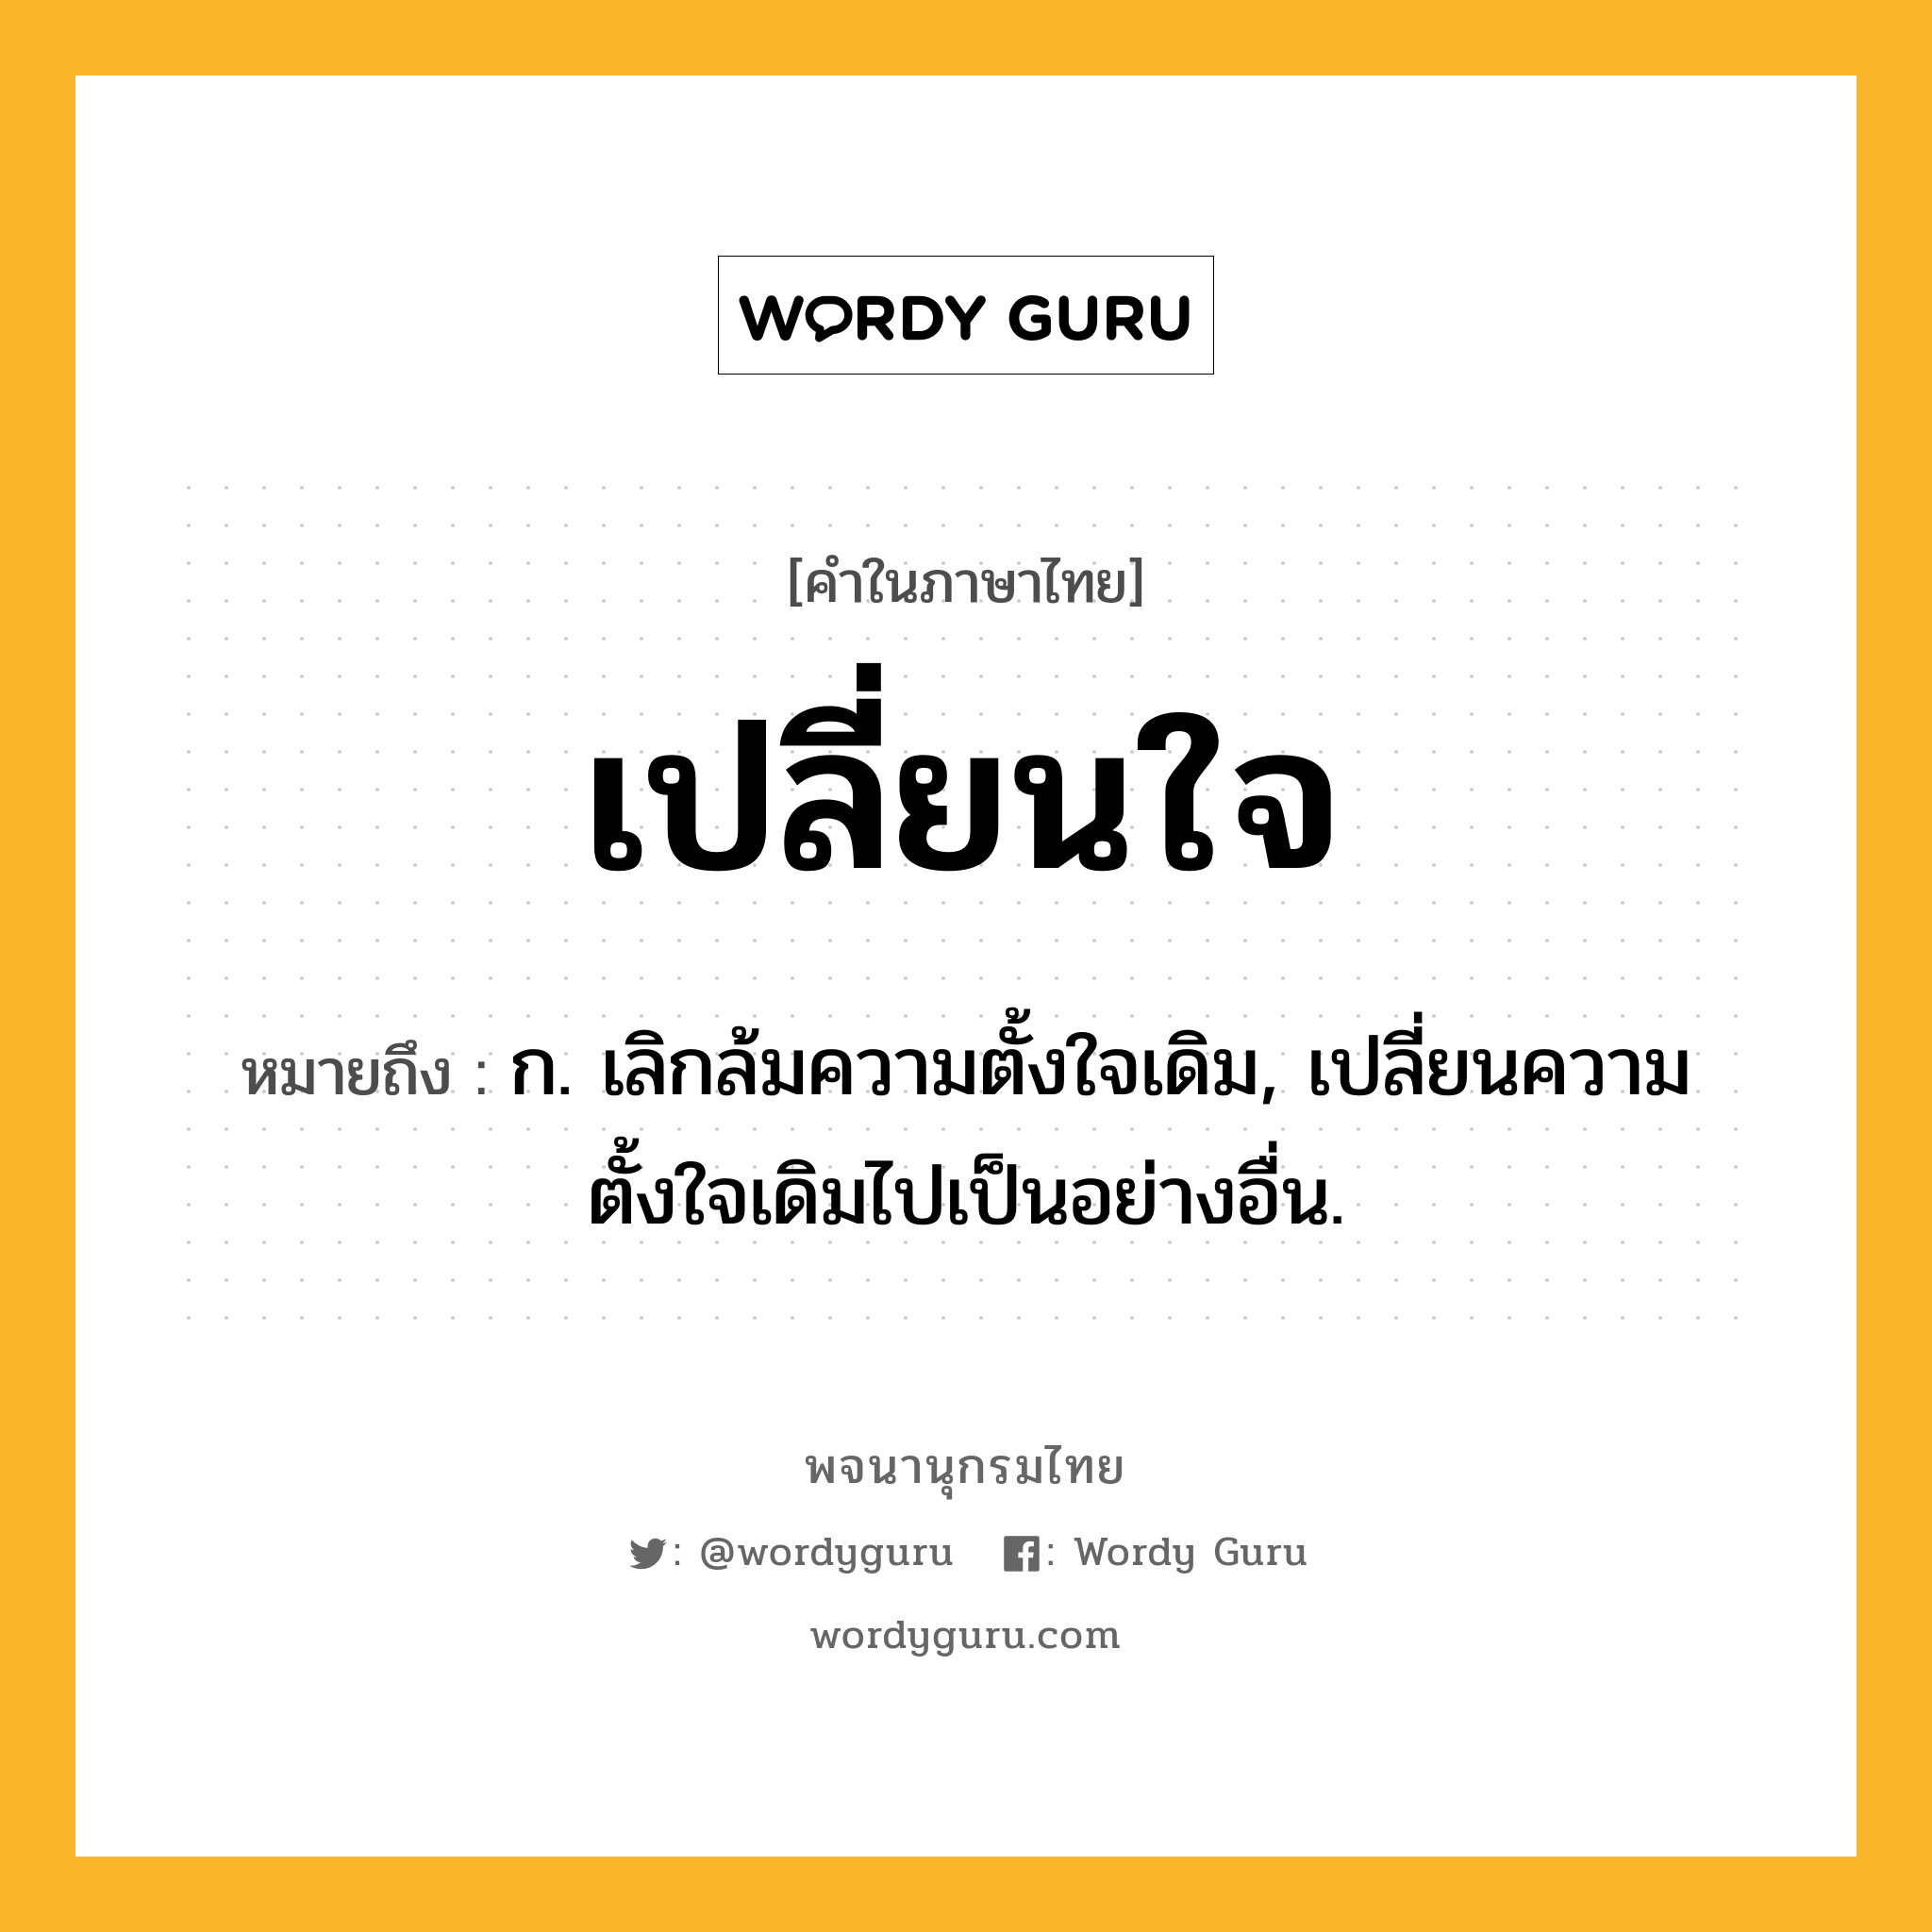 เปลี่ยนใจ ความหมาย หมายถึงอะไร?, คำในภาษาไทย เปลี่ยนใจ หมายถึง ก. เลิกล้มความตั้งใจเดิม, เปลี่ยนความตั้งใจเดิมไปเป็นอย่างอื่น.